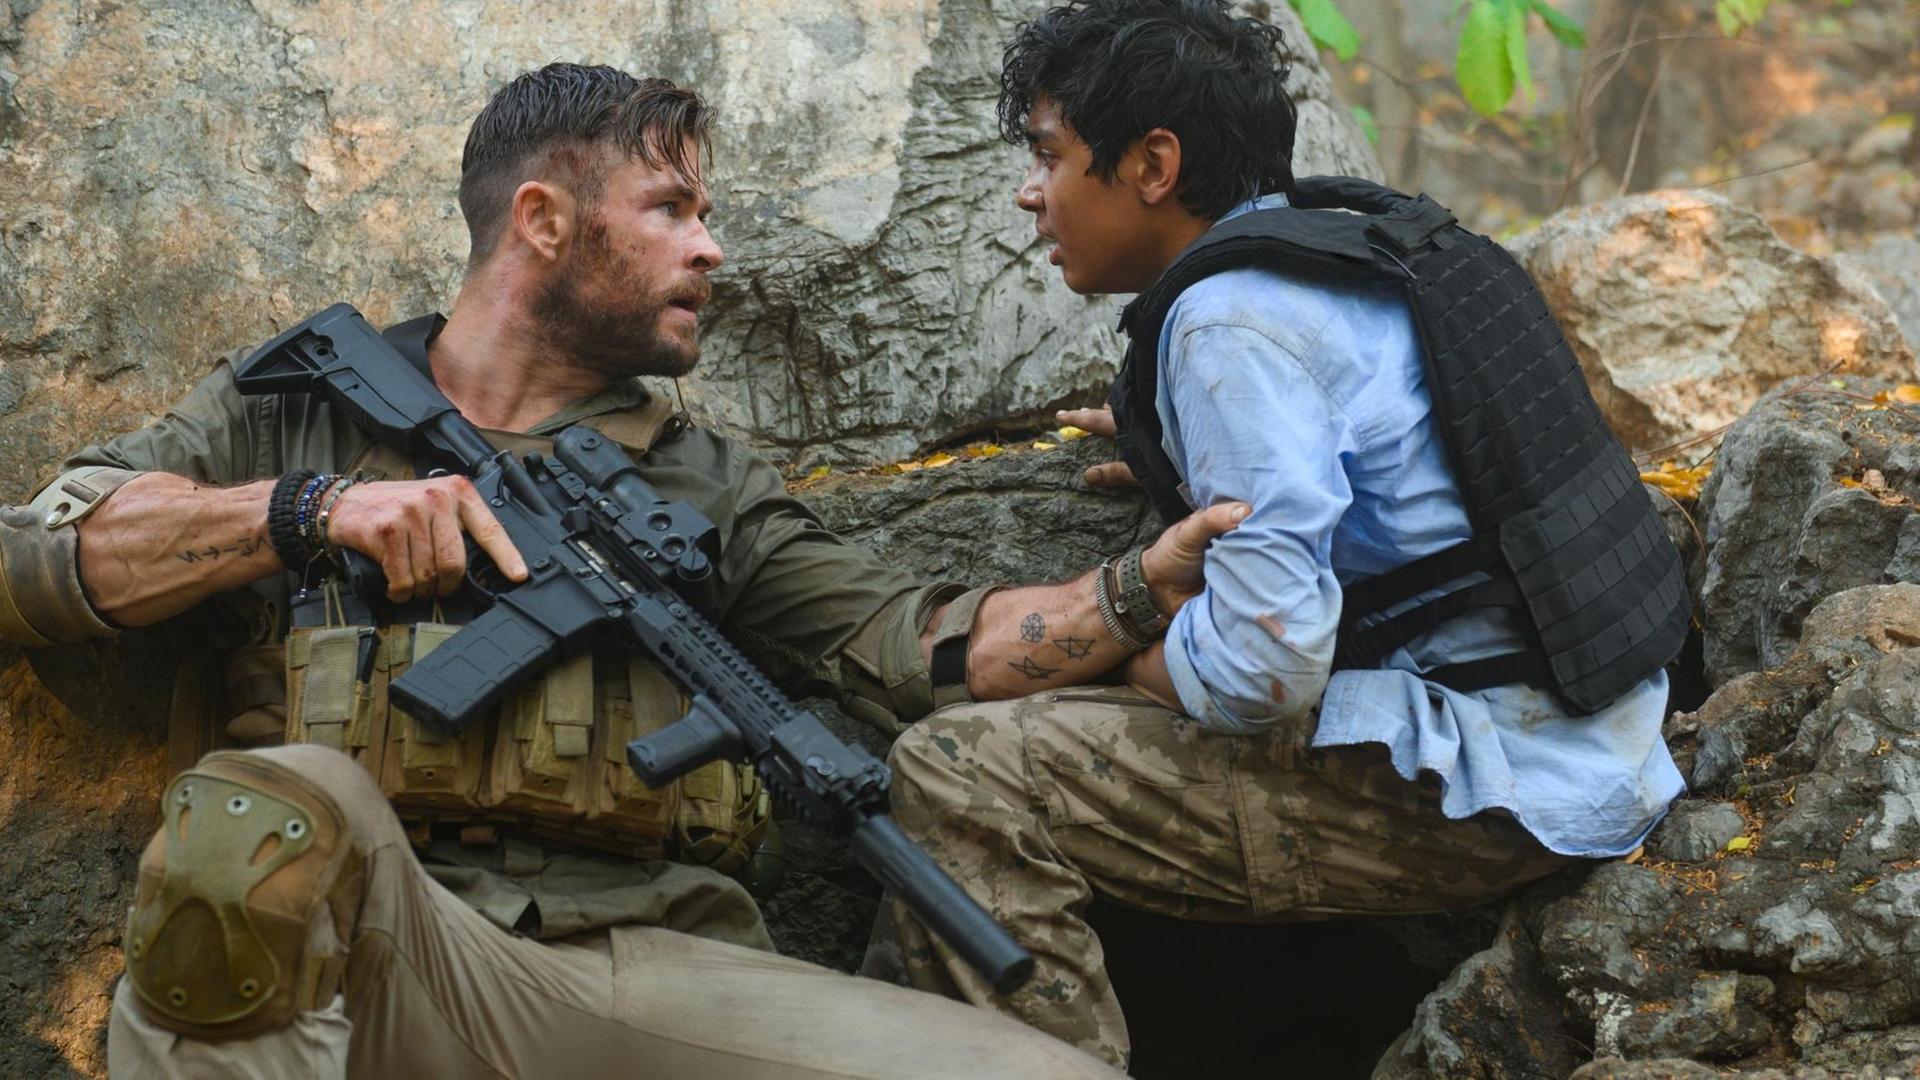 Szenenfoto aus dem Actionfilm "Extraction" mit Chris Hemsworth und einem jugendlichen Nebendarsteller.